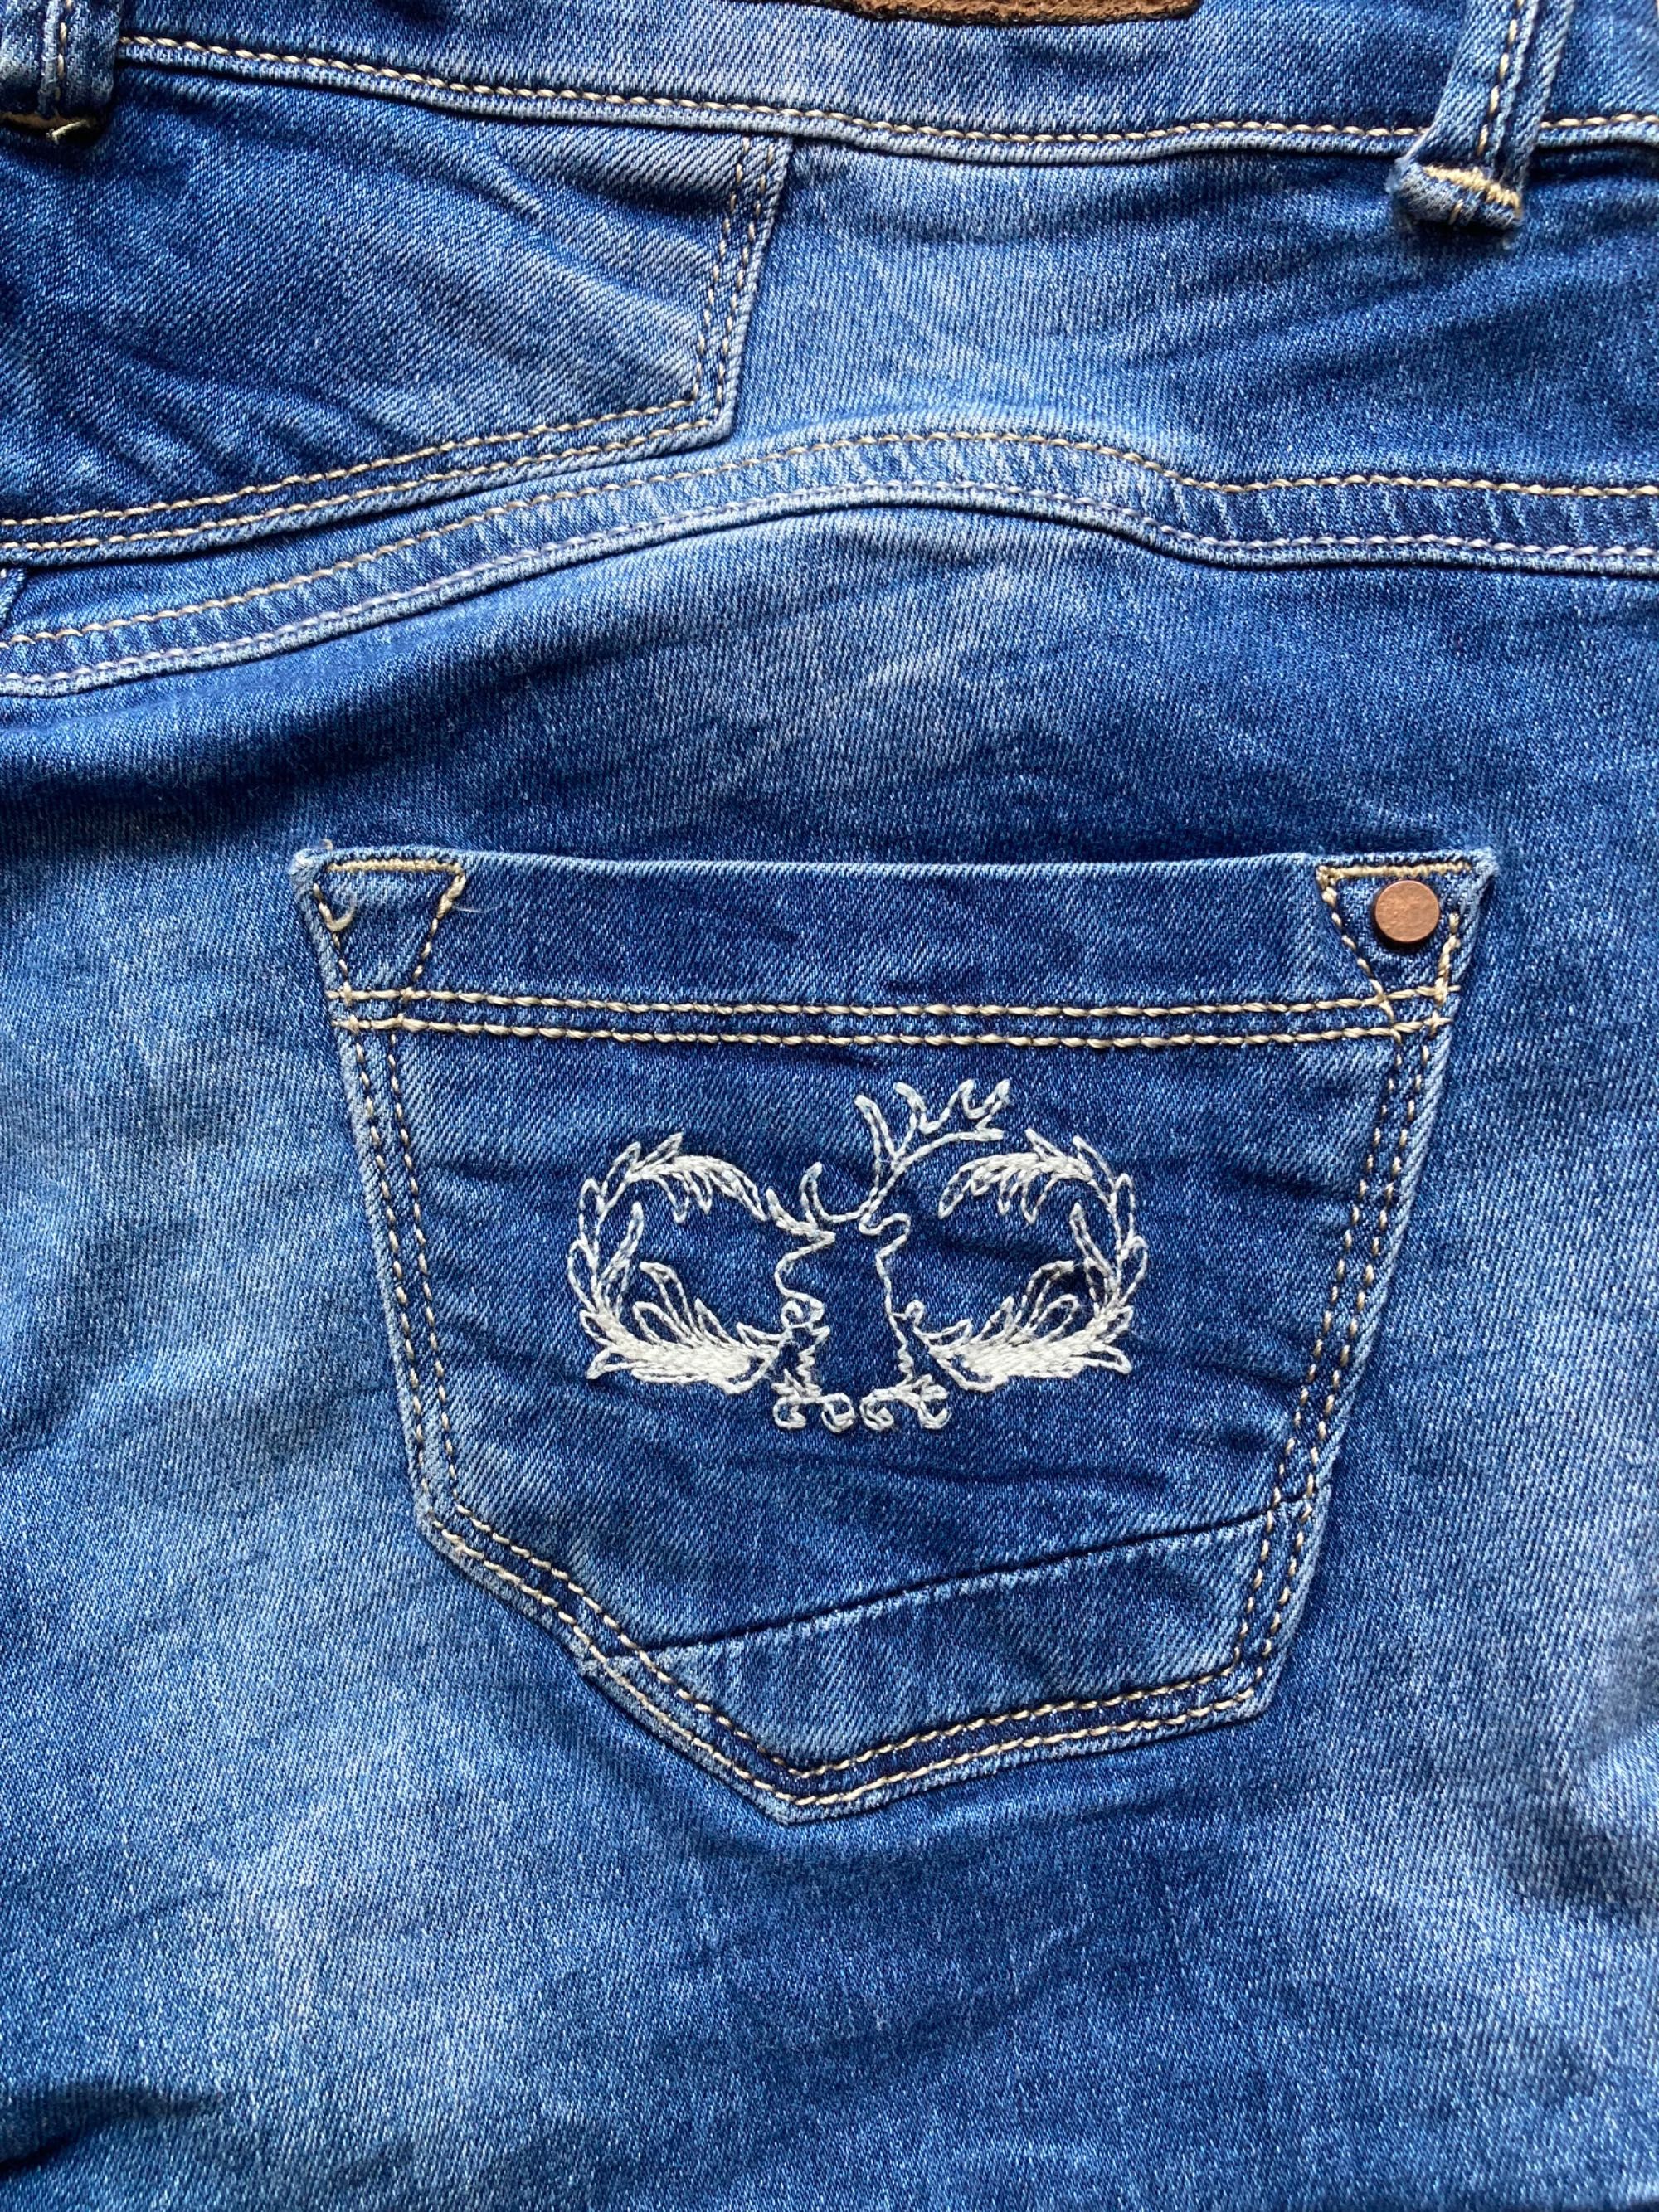 Spodenki szorty jeans z piękną aplikacją jelenia retro vintage